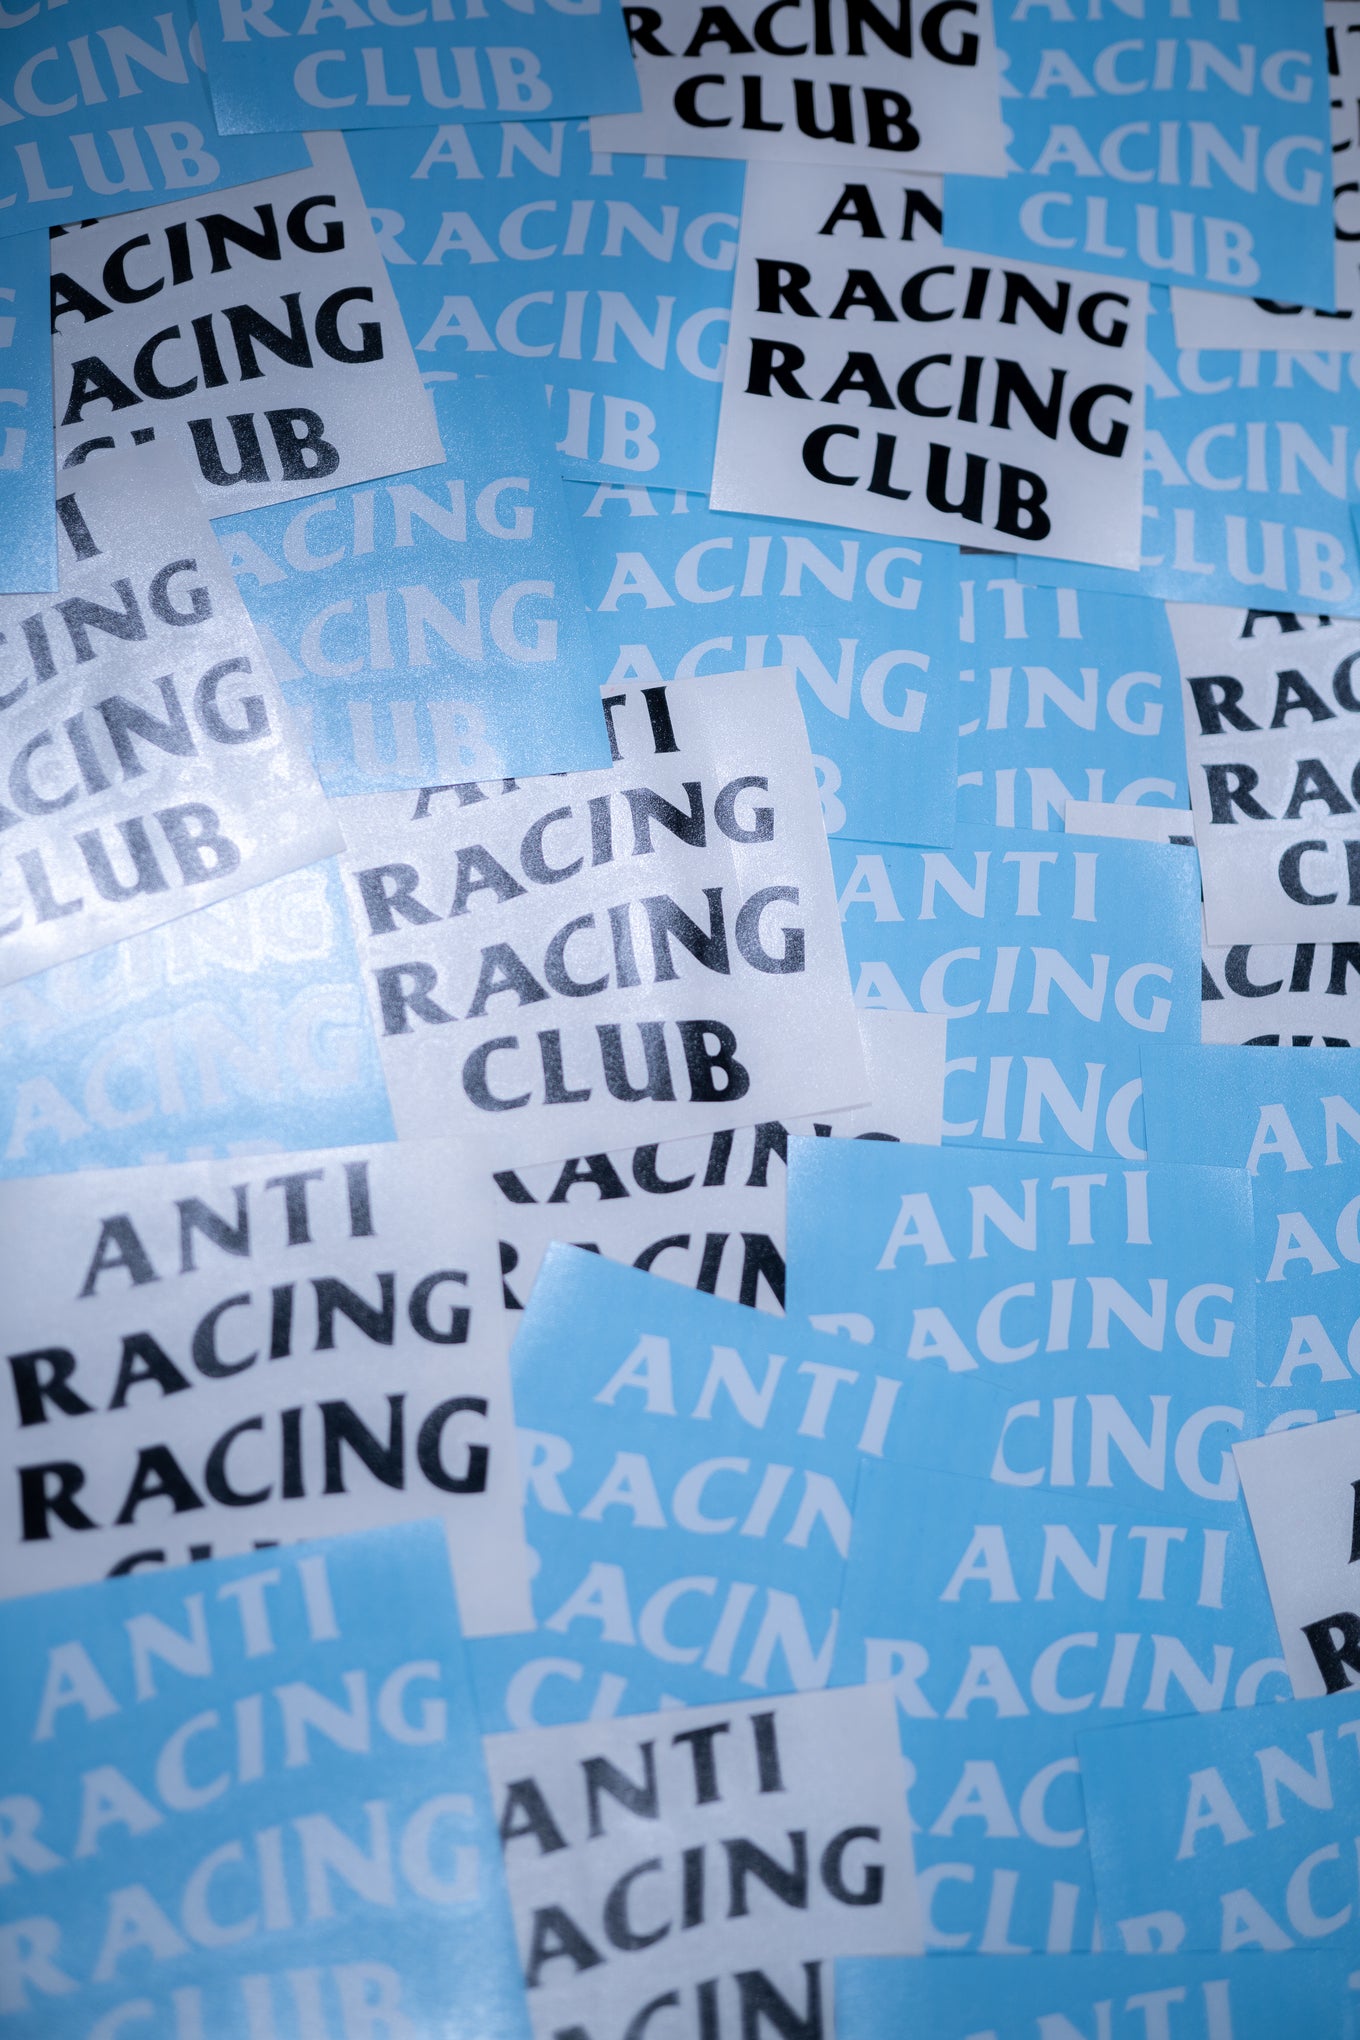 Anti Racing Racing Club Decal